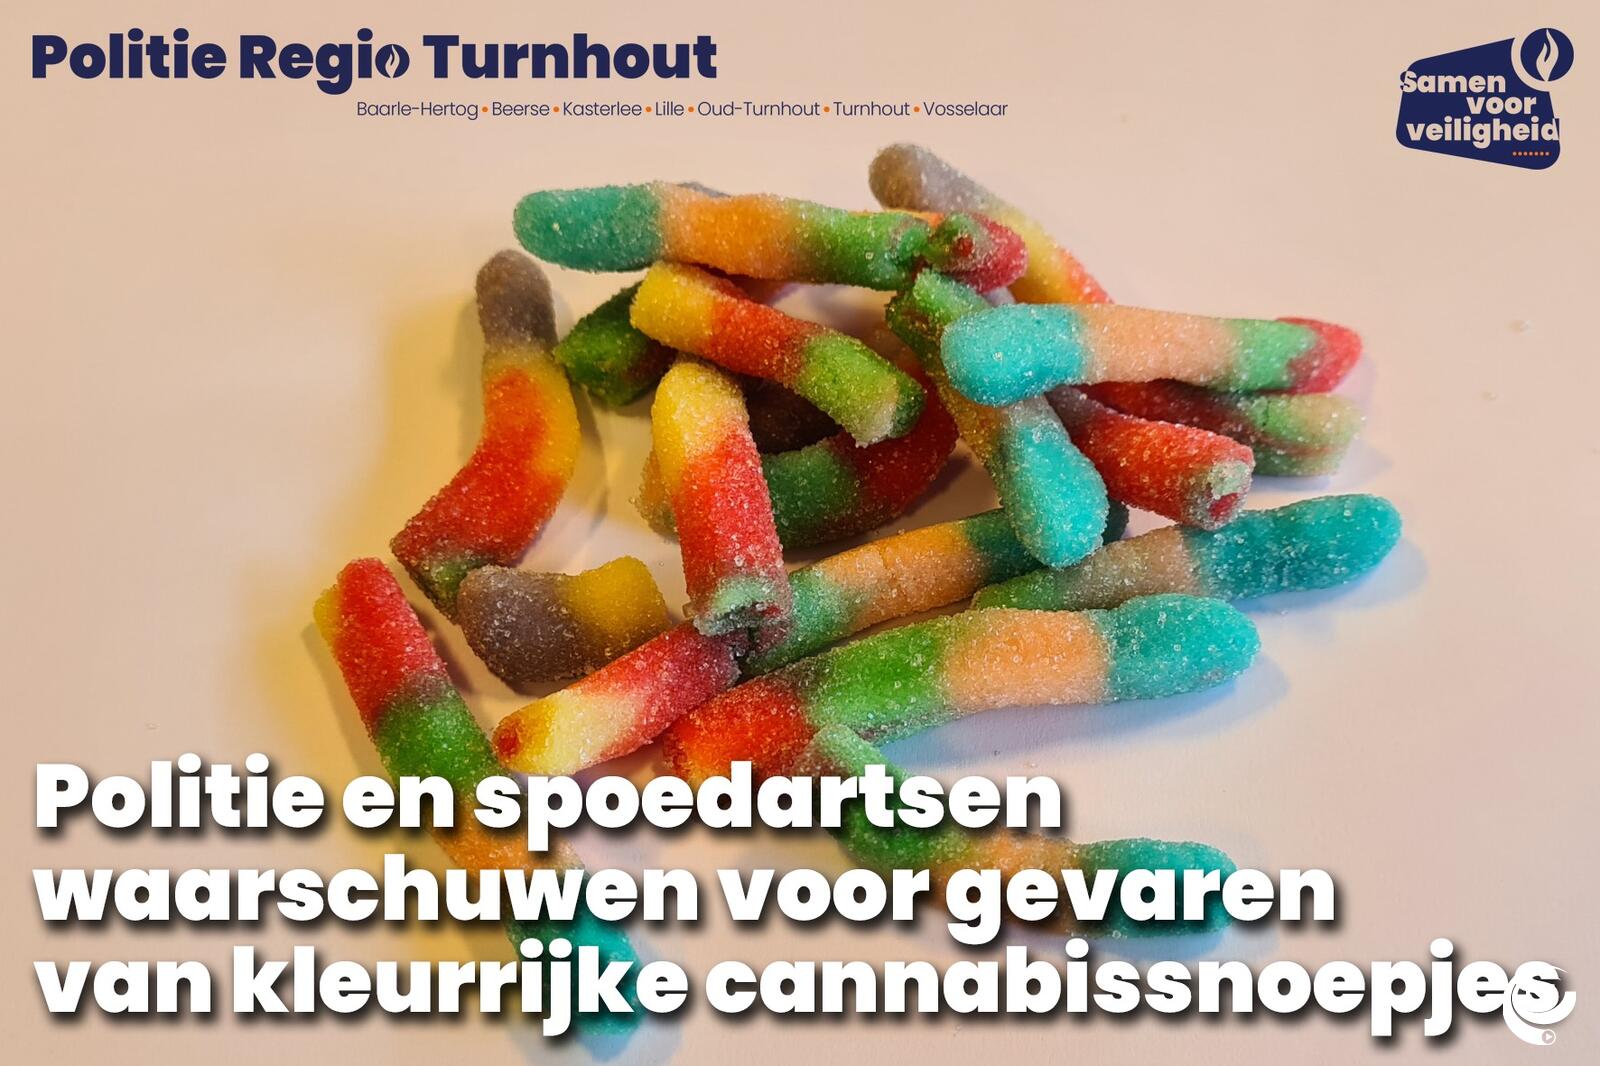 drugs - foto politie Turnhout